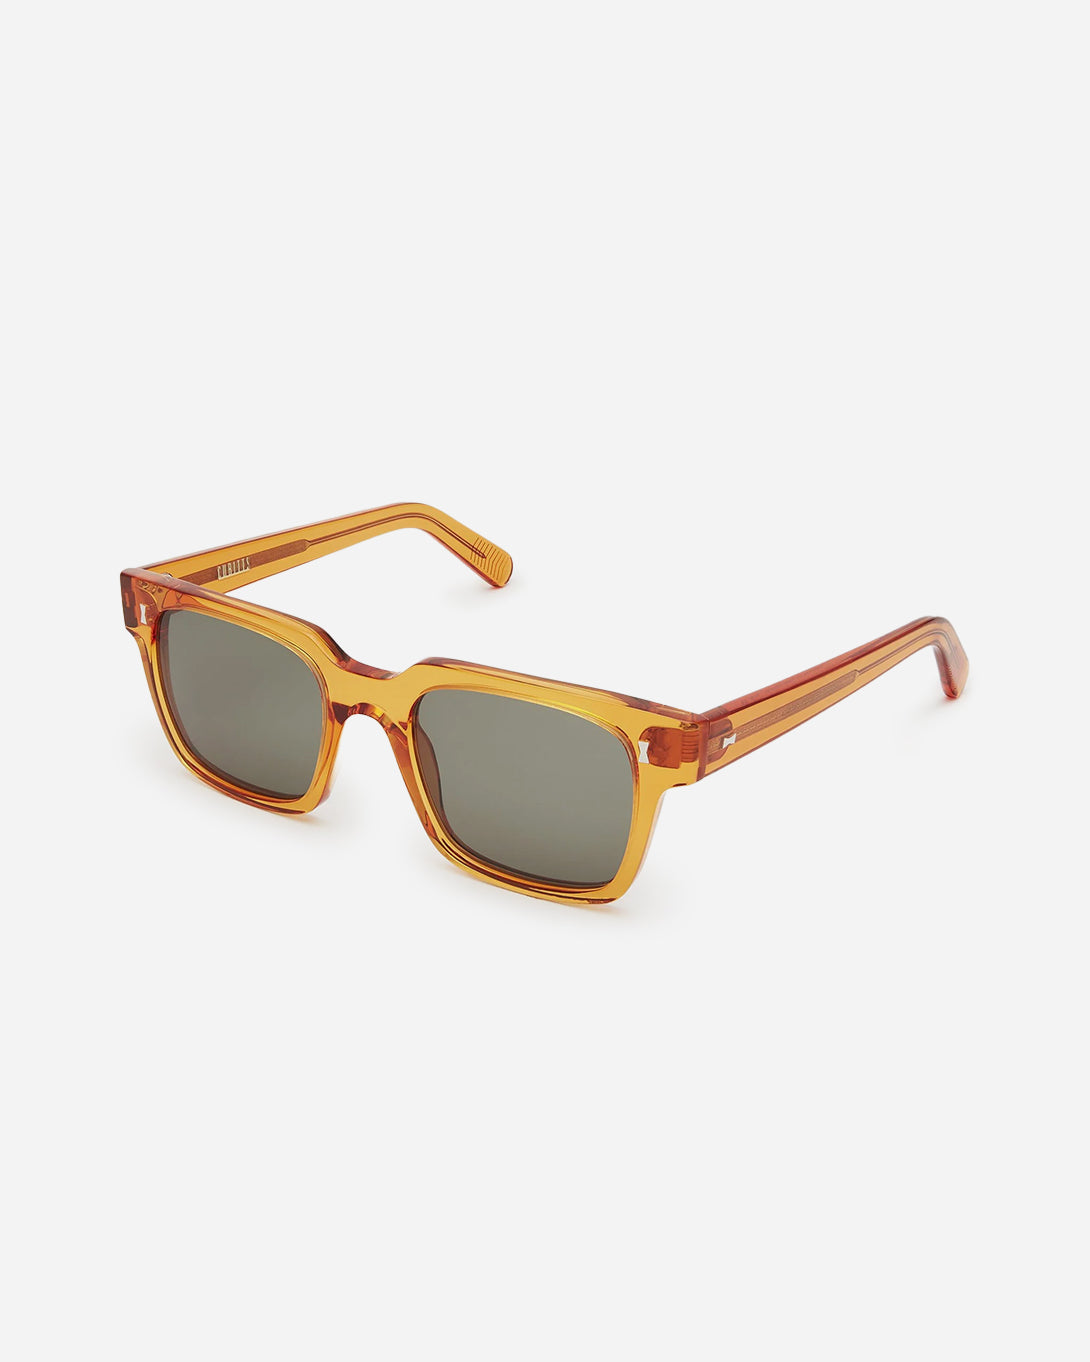 Tangerine Panton Cubitts Sunglasses